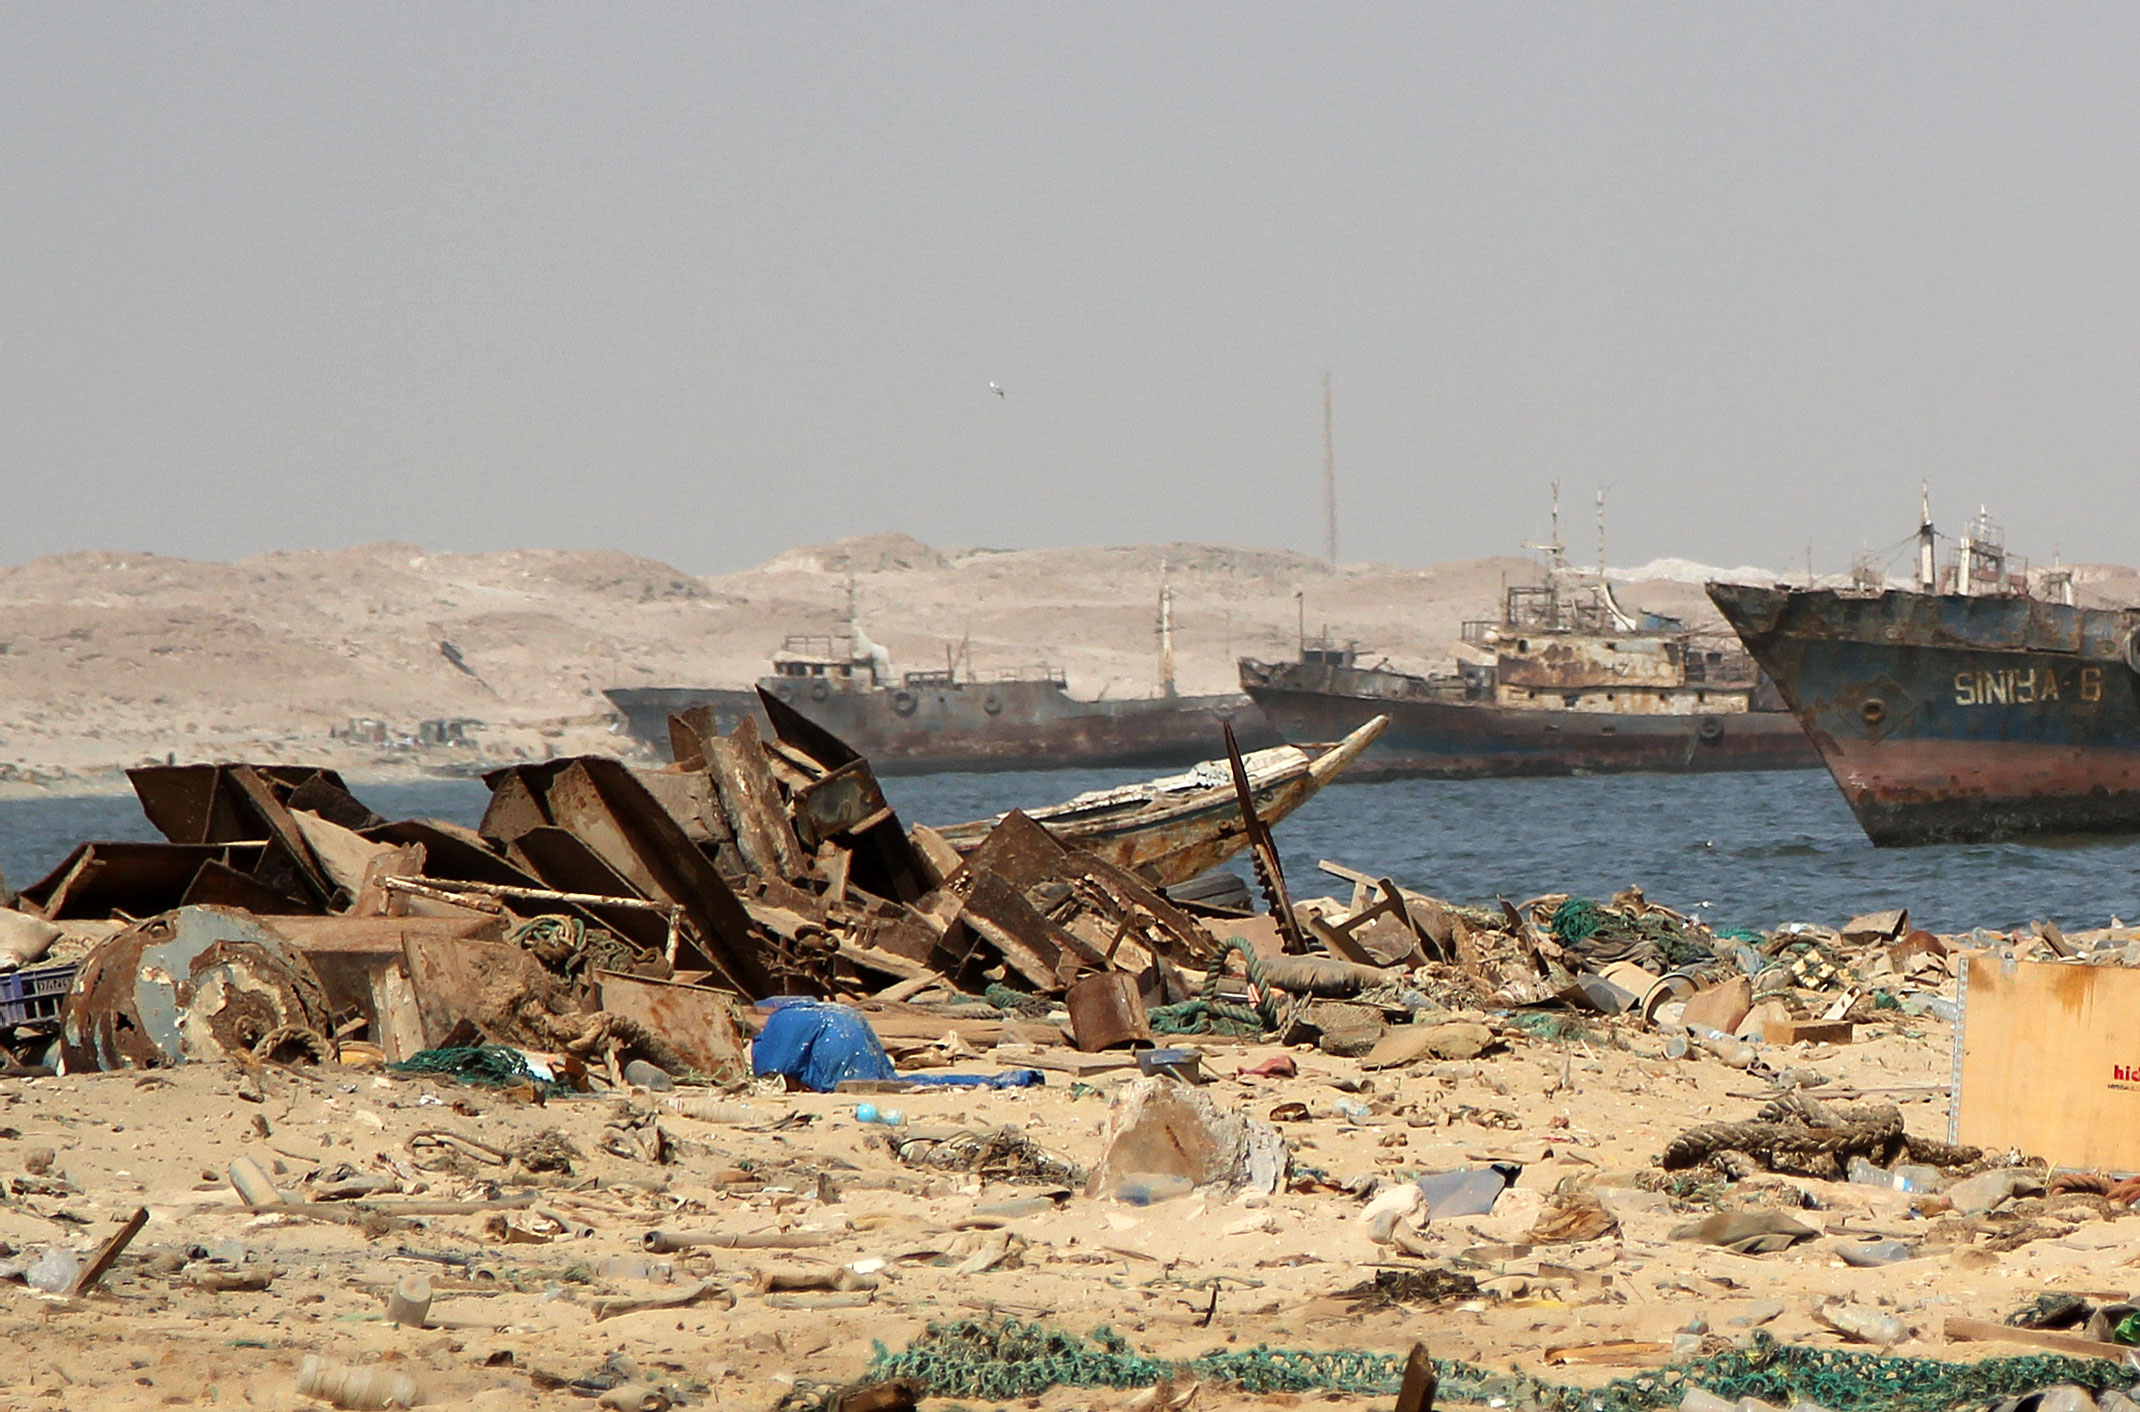 Mauretania.Zatoka wraków,zwana również cmentarzyskiem wraków.Nouadhibou